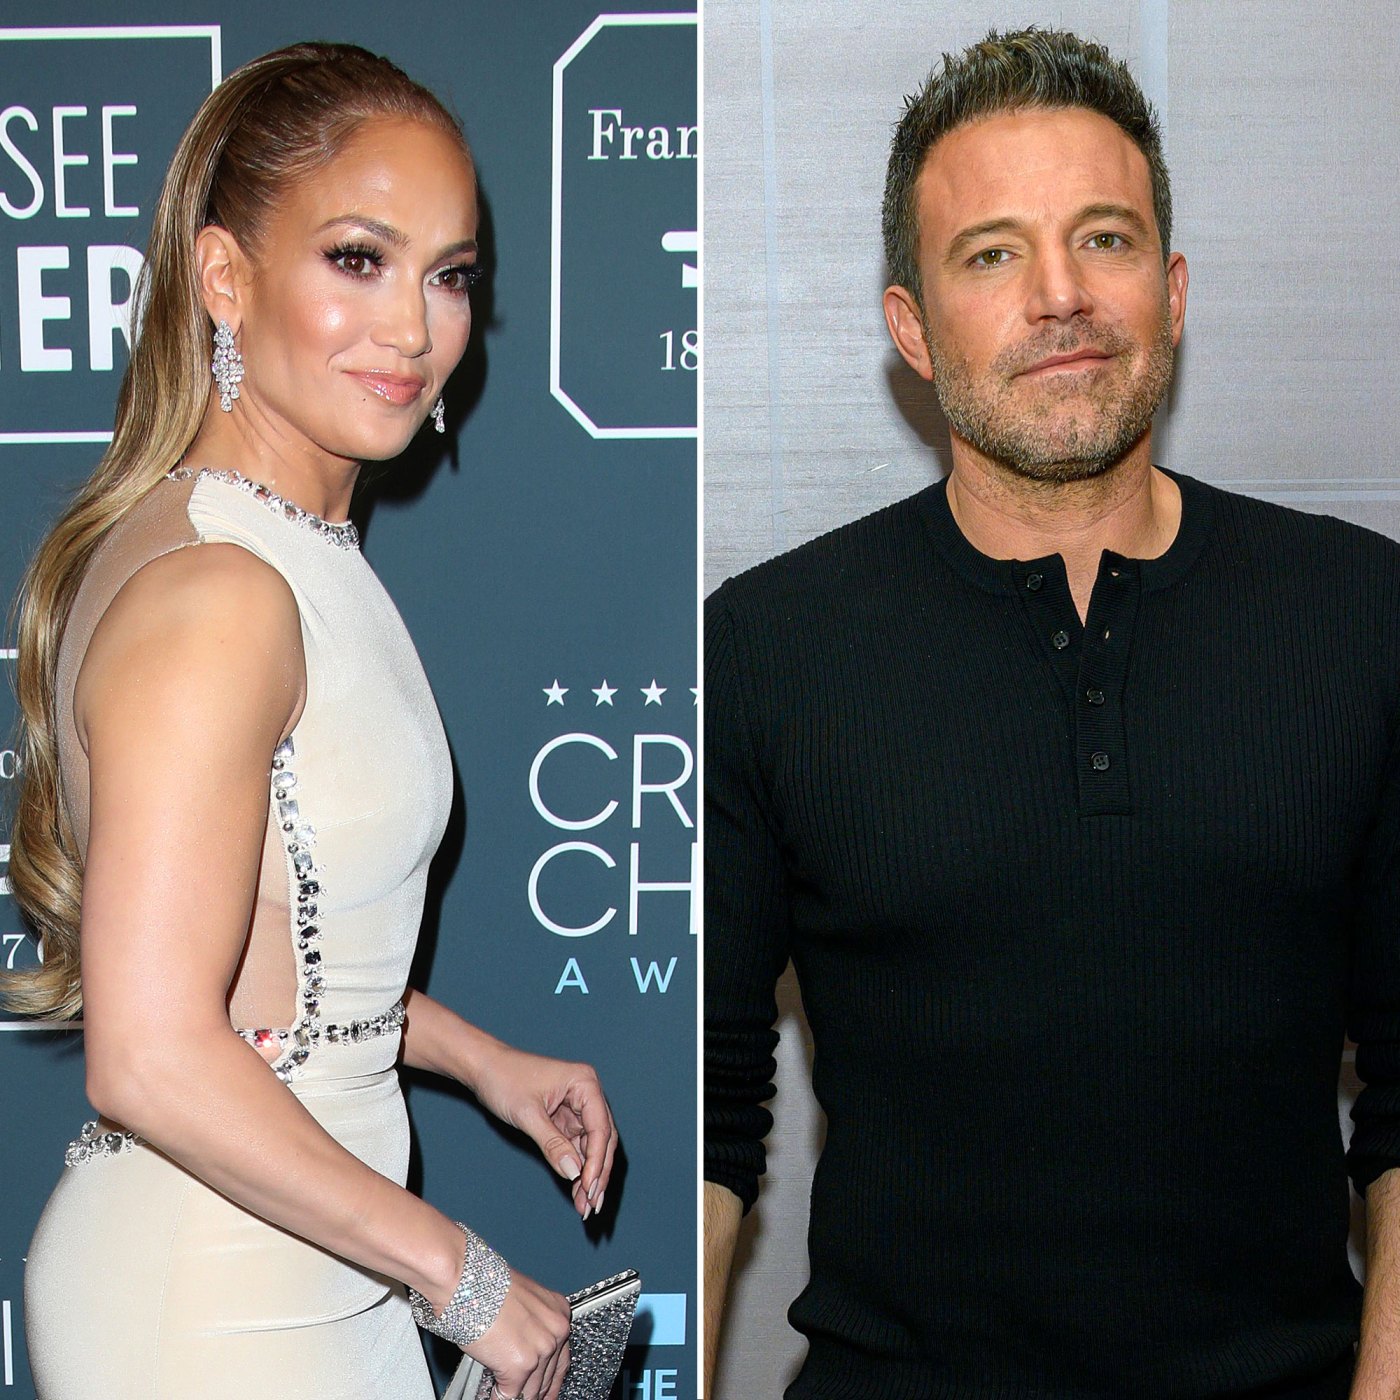 Ben Affleck And Jennifer Lopez’s Relationship Timeline